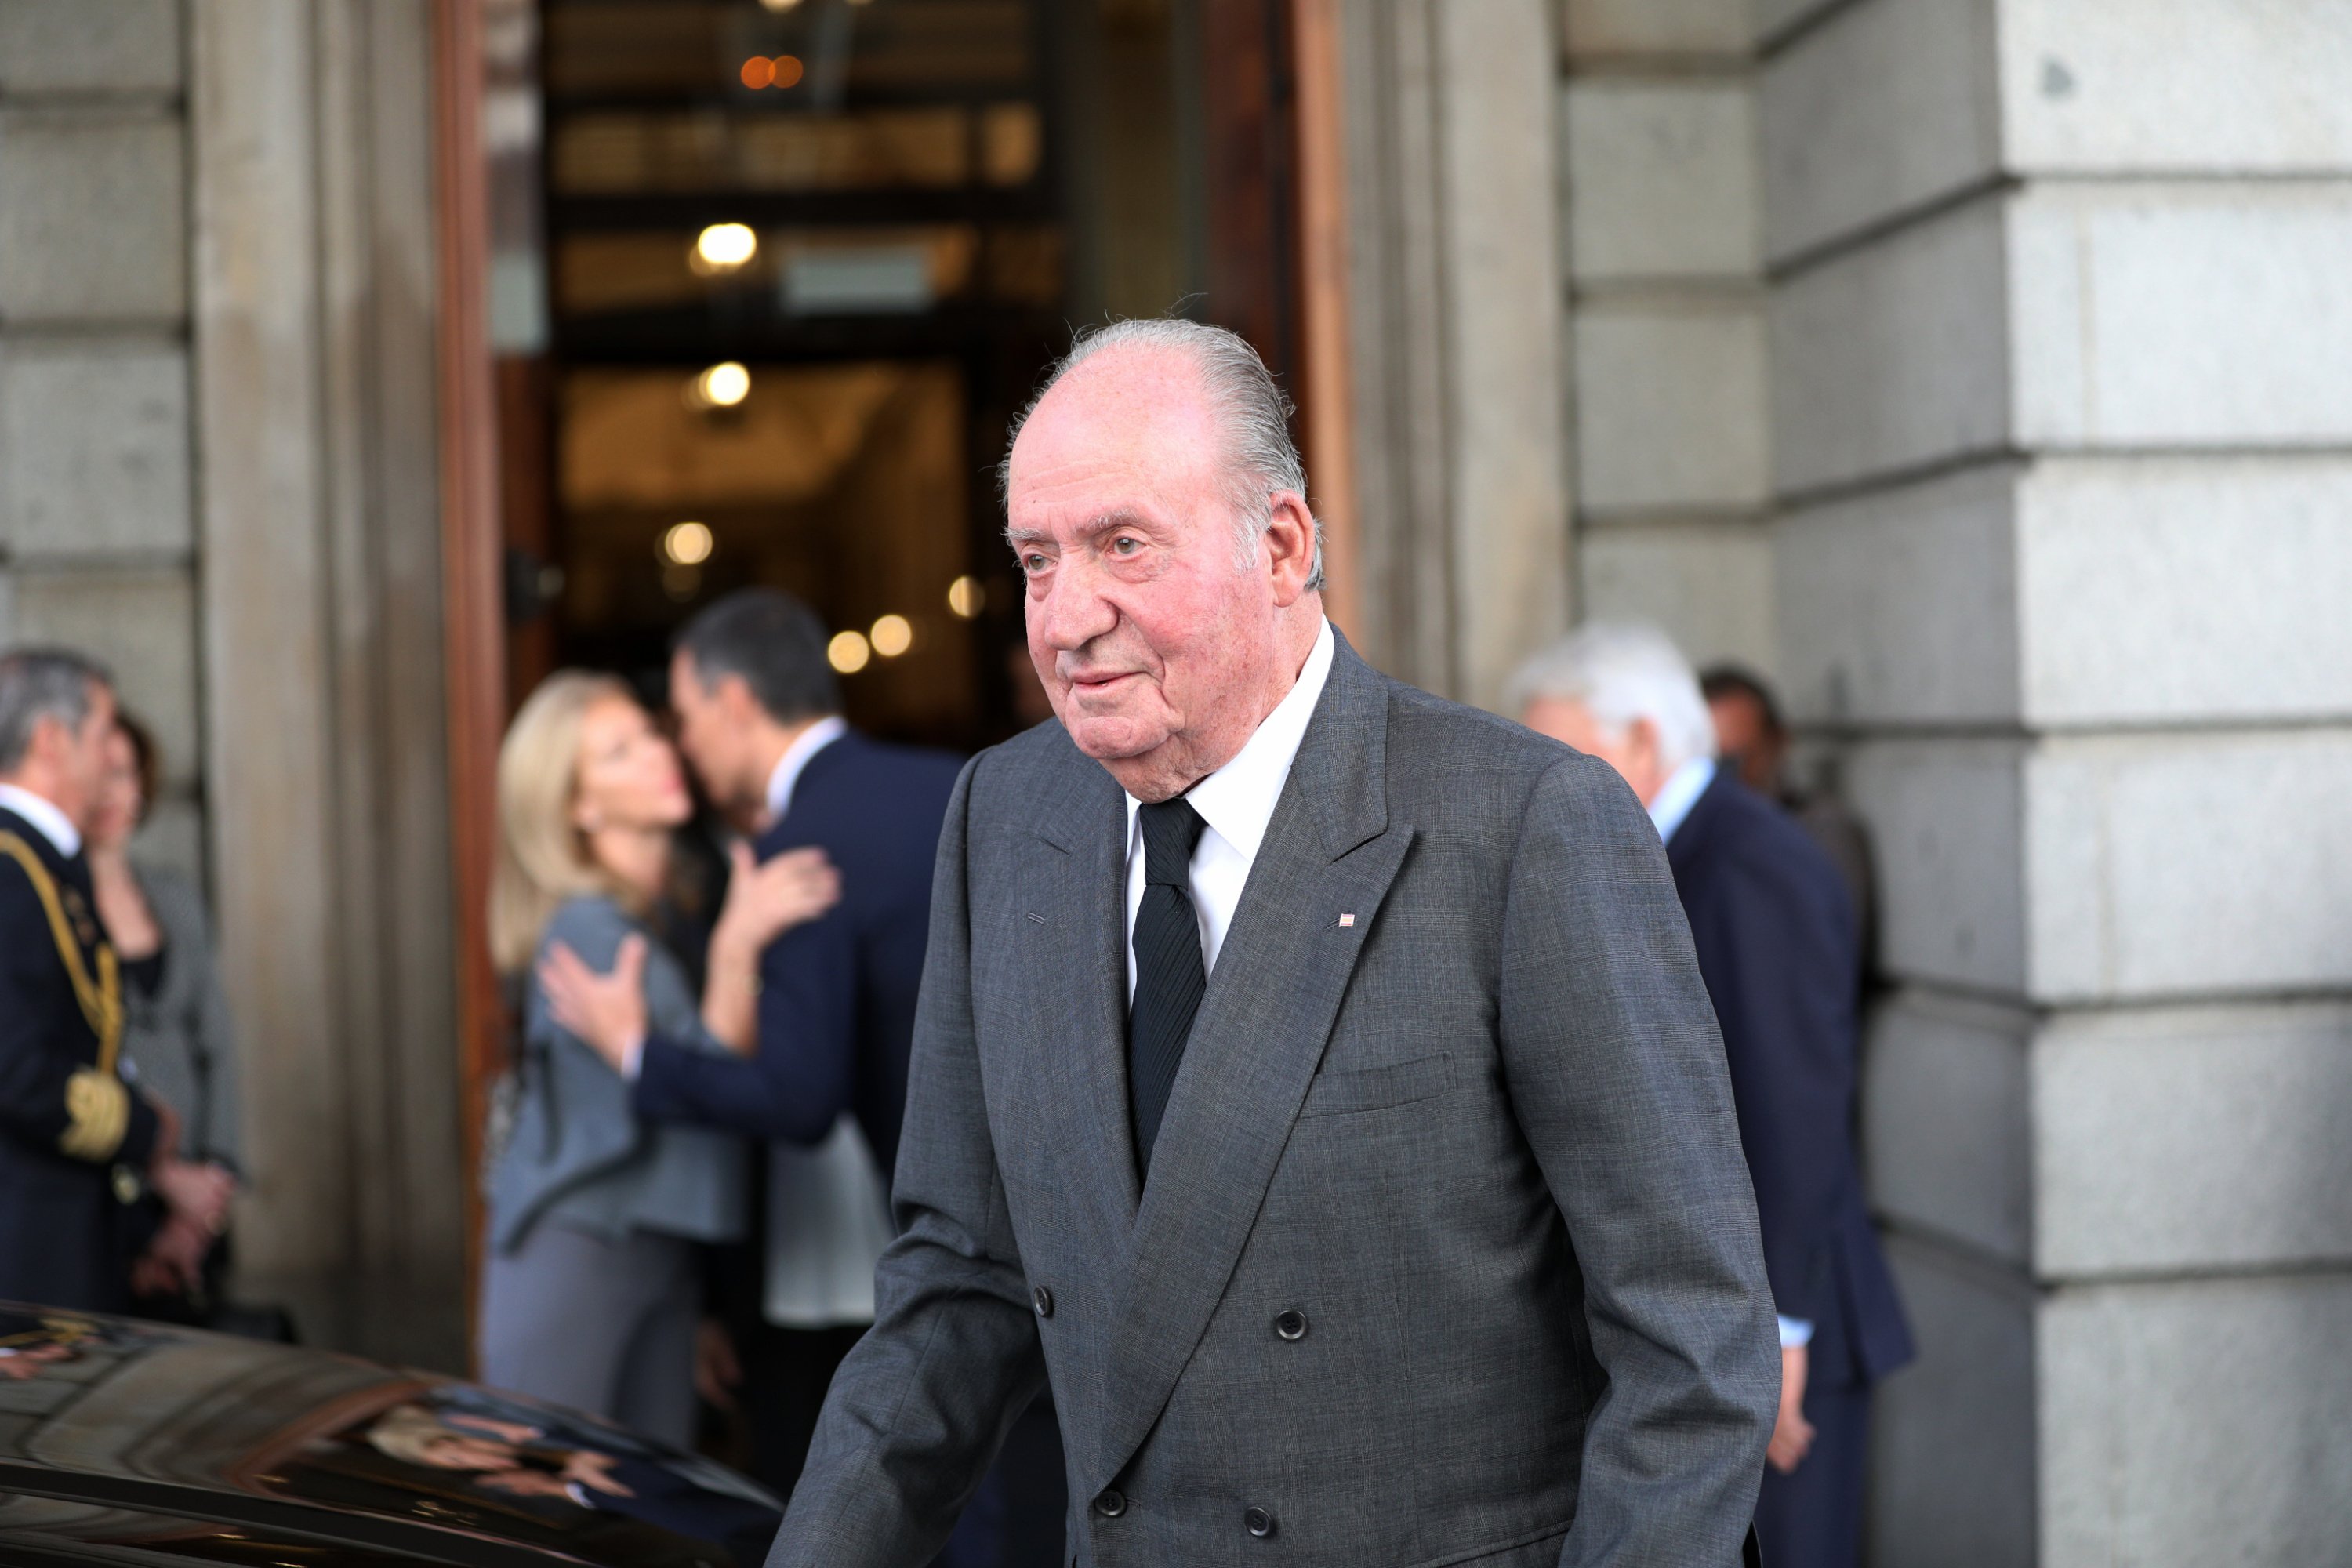 La investigació suïssa a Joan Carles I pels 65 milions segueix: noves indagacions